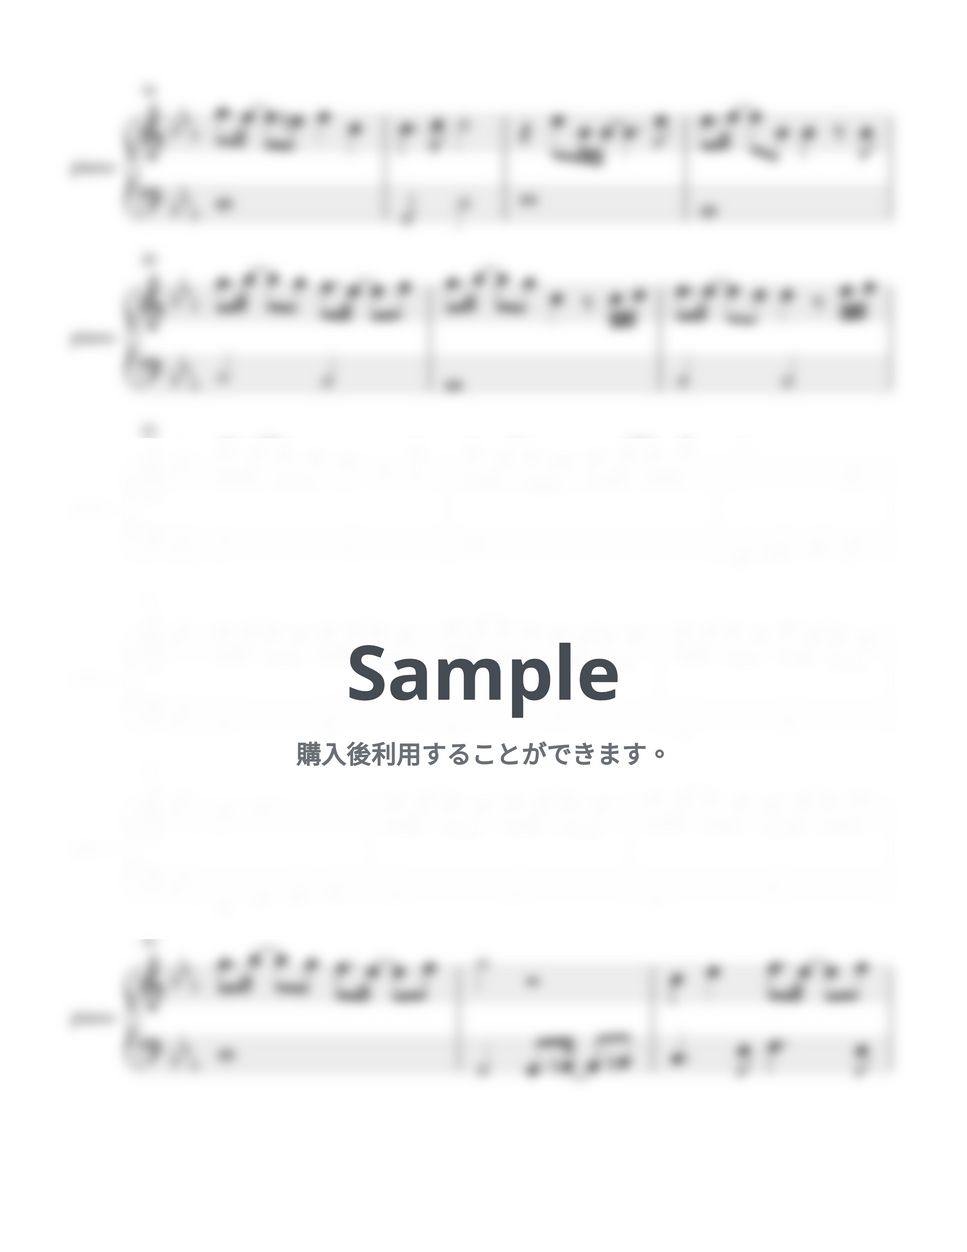 高橋洋子 - 残酷な天使のテーゼ (新世紀エヴァンゲリオン / ピアノ初心者向け) by Piano Lovers. jp